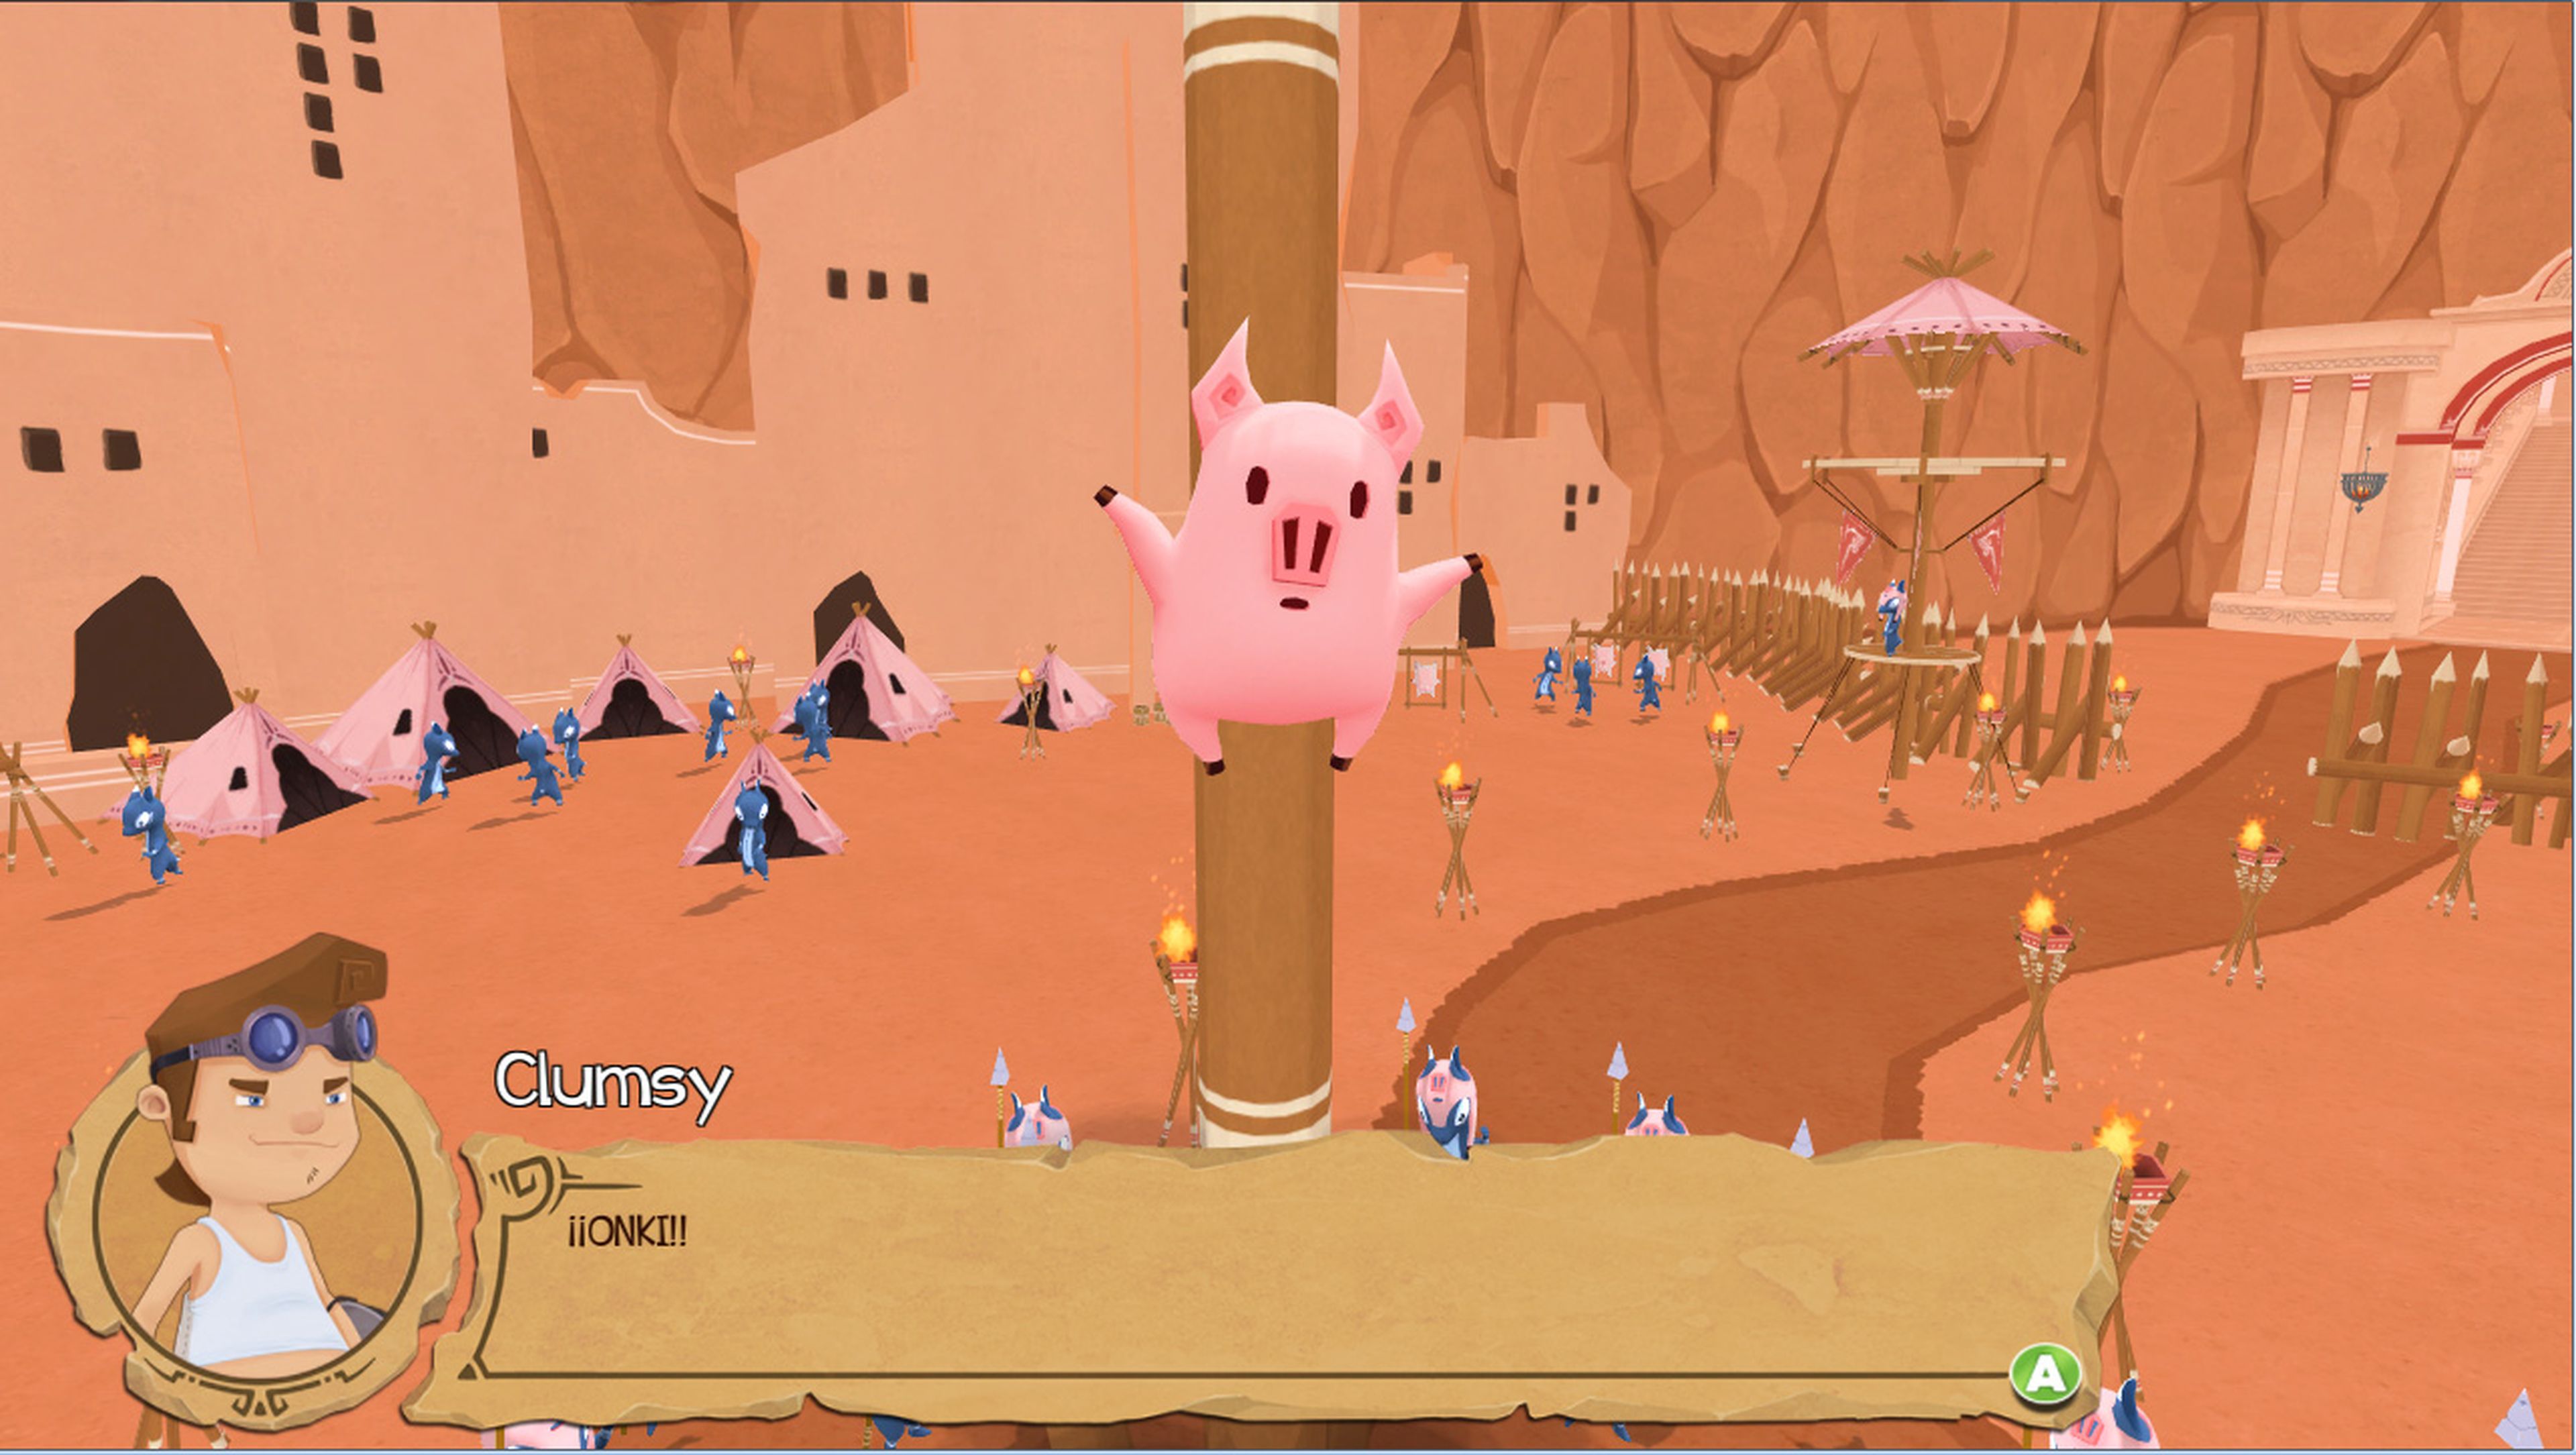 Onki es un cerdo parlante que acompañará a Clumsy a lo largo de su aventura.